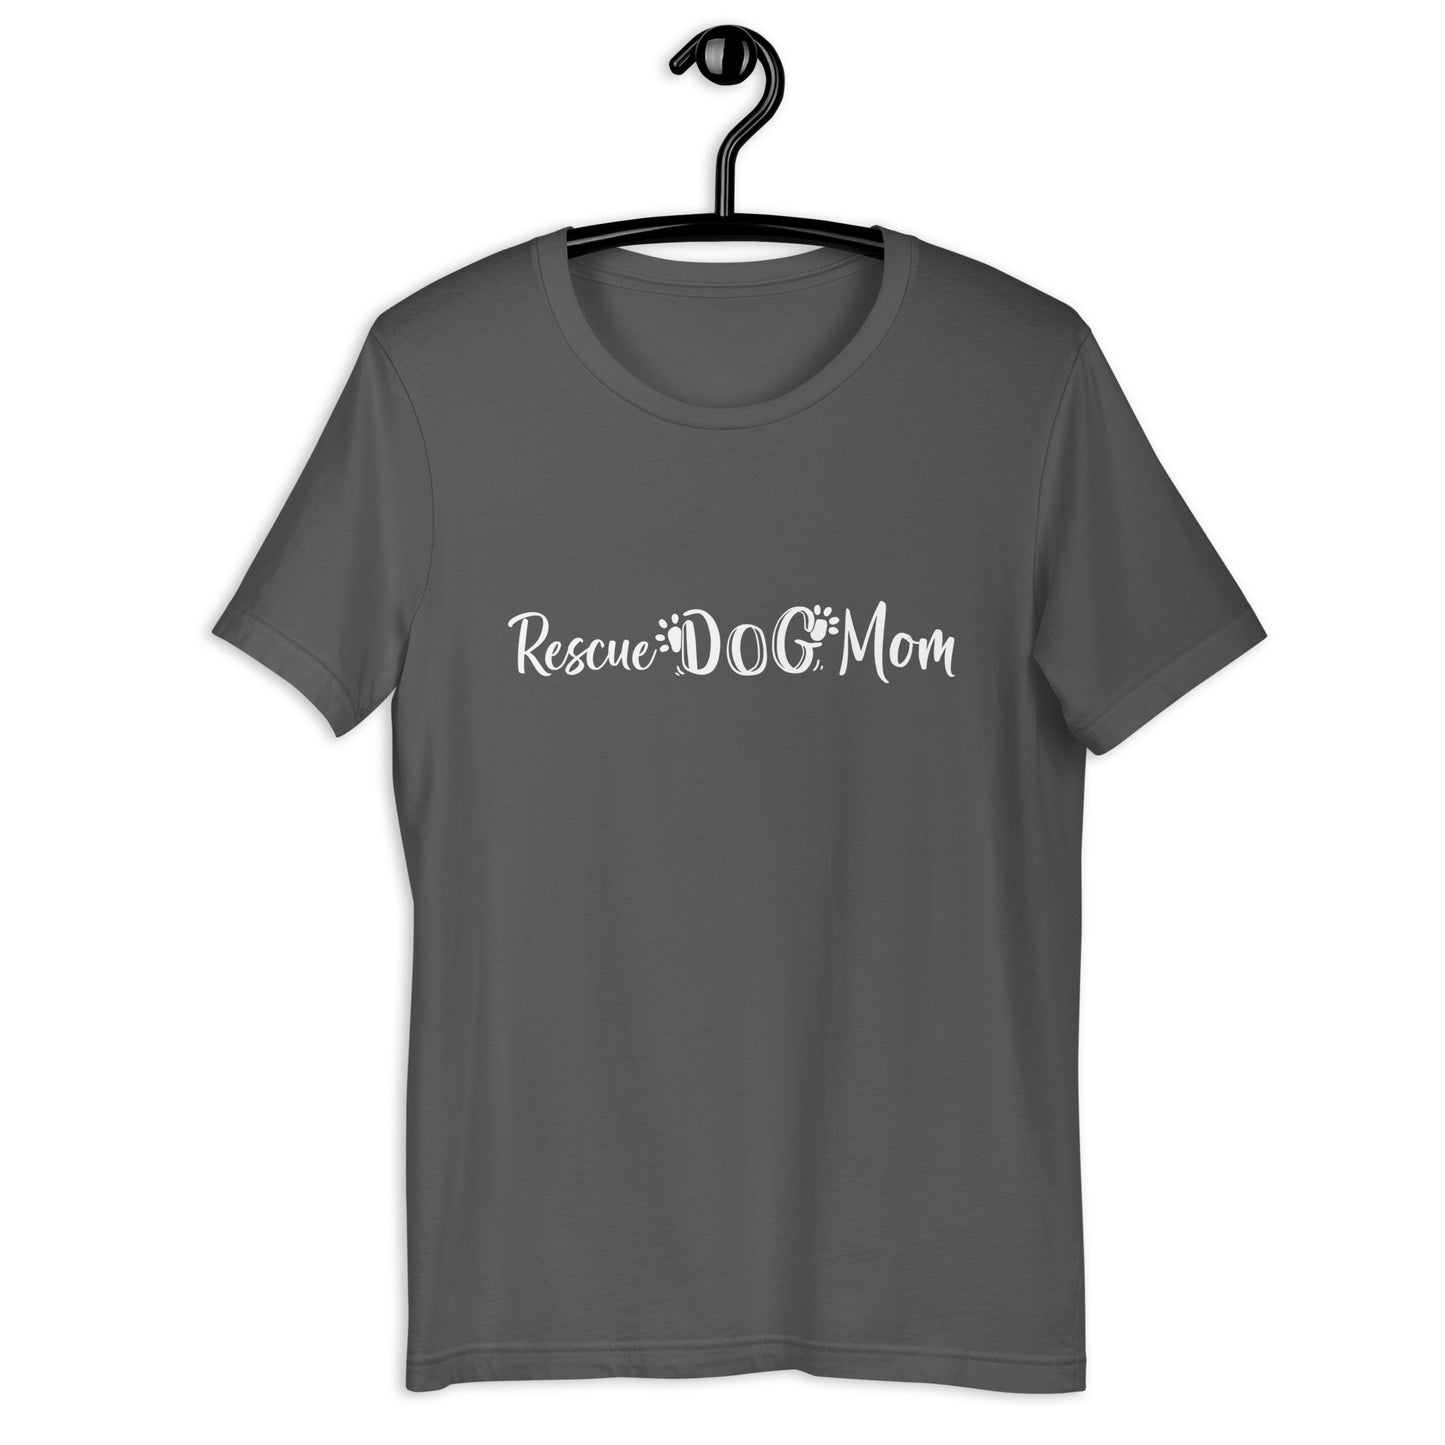 RESCUE DOG MOM - Unisex t-shirt